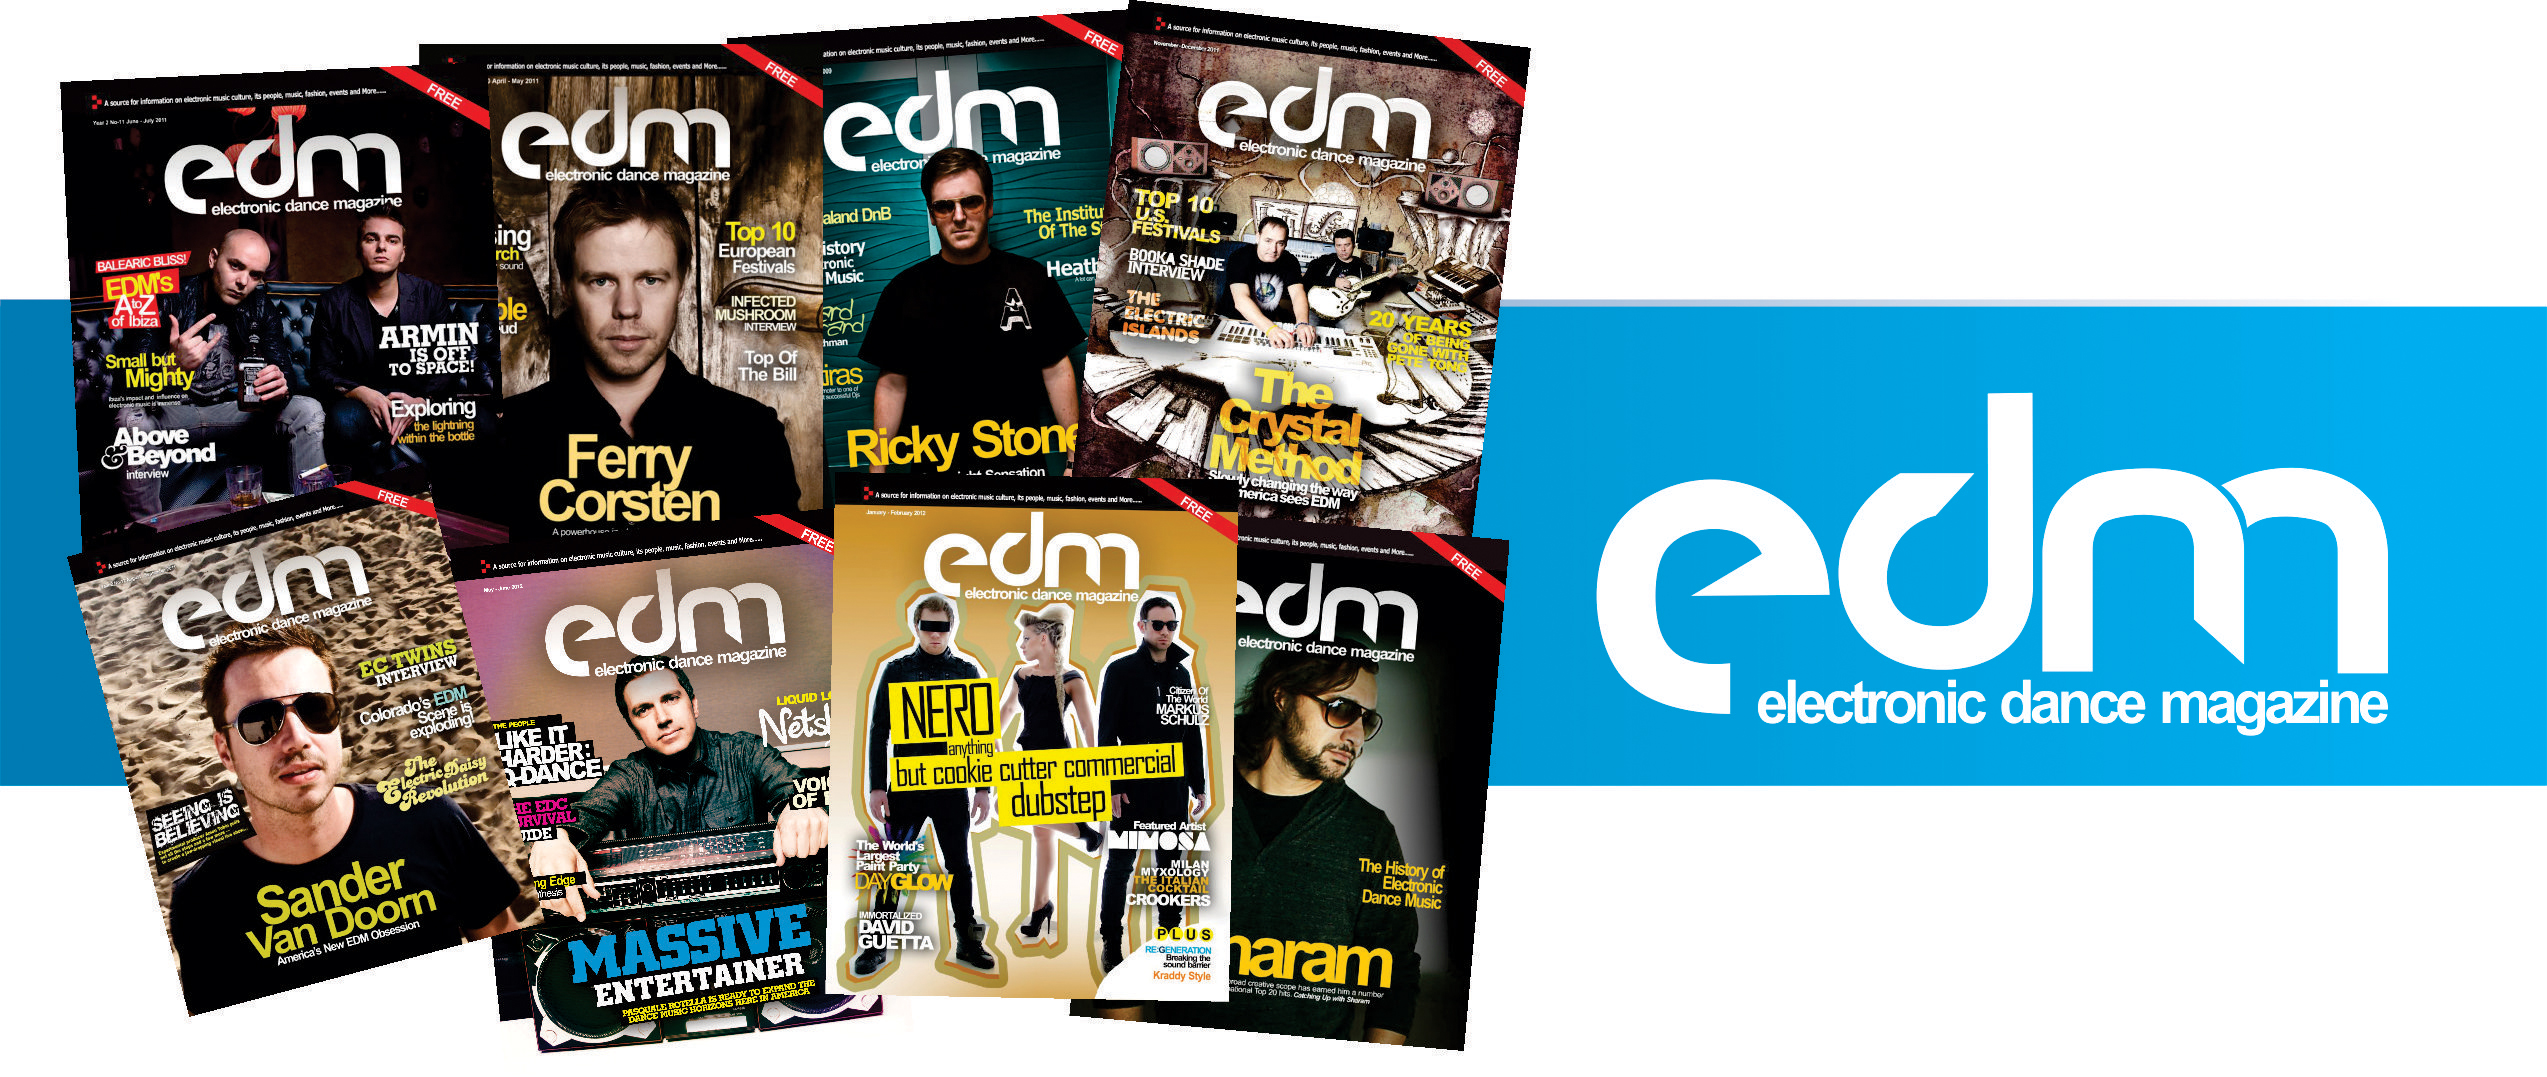 EDMtv founder buys EDM Magazine